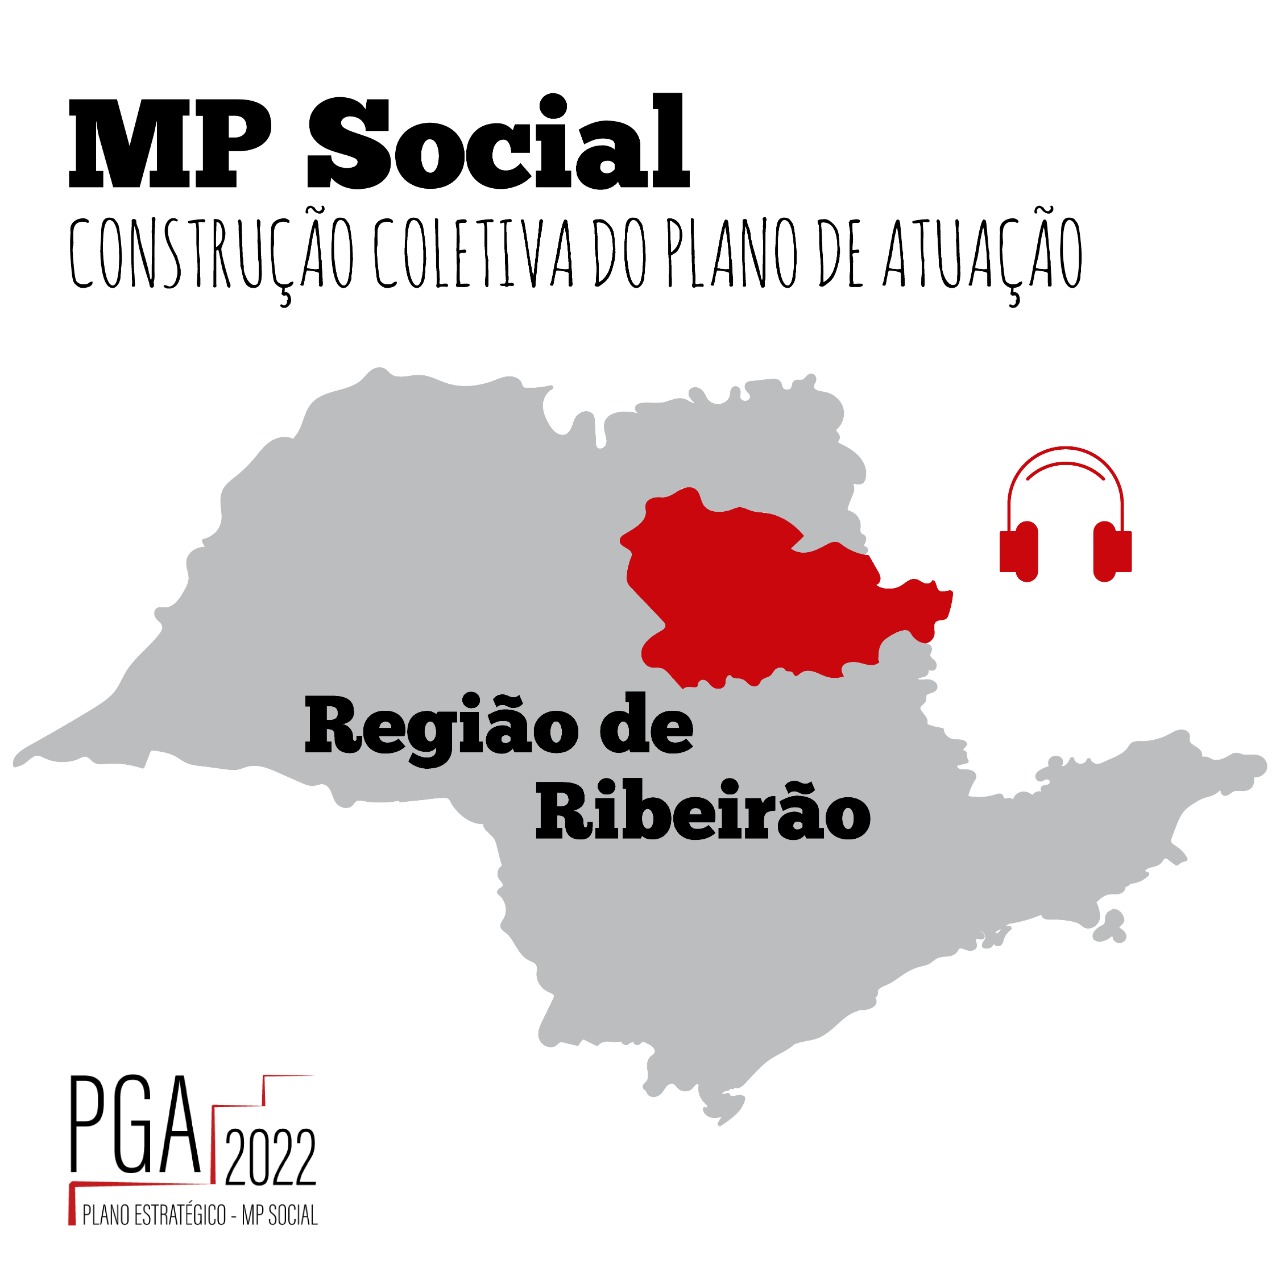 MP Social - Construção coletiva do plano de atuação - Região de Ribeirão Preto - PGA 2021- plano estratégico MP Social